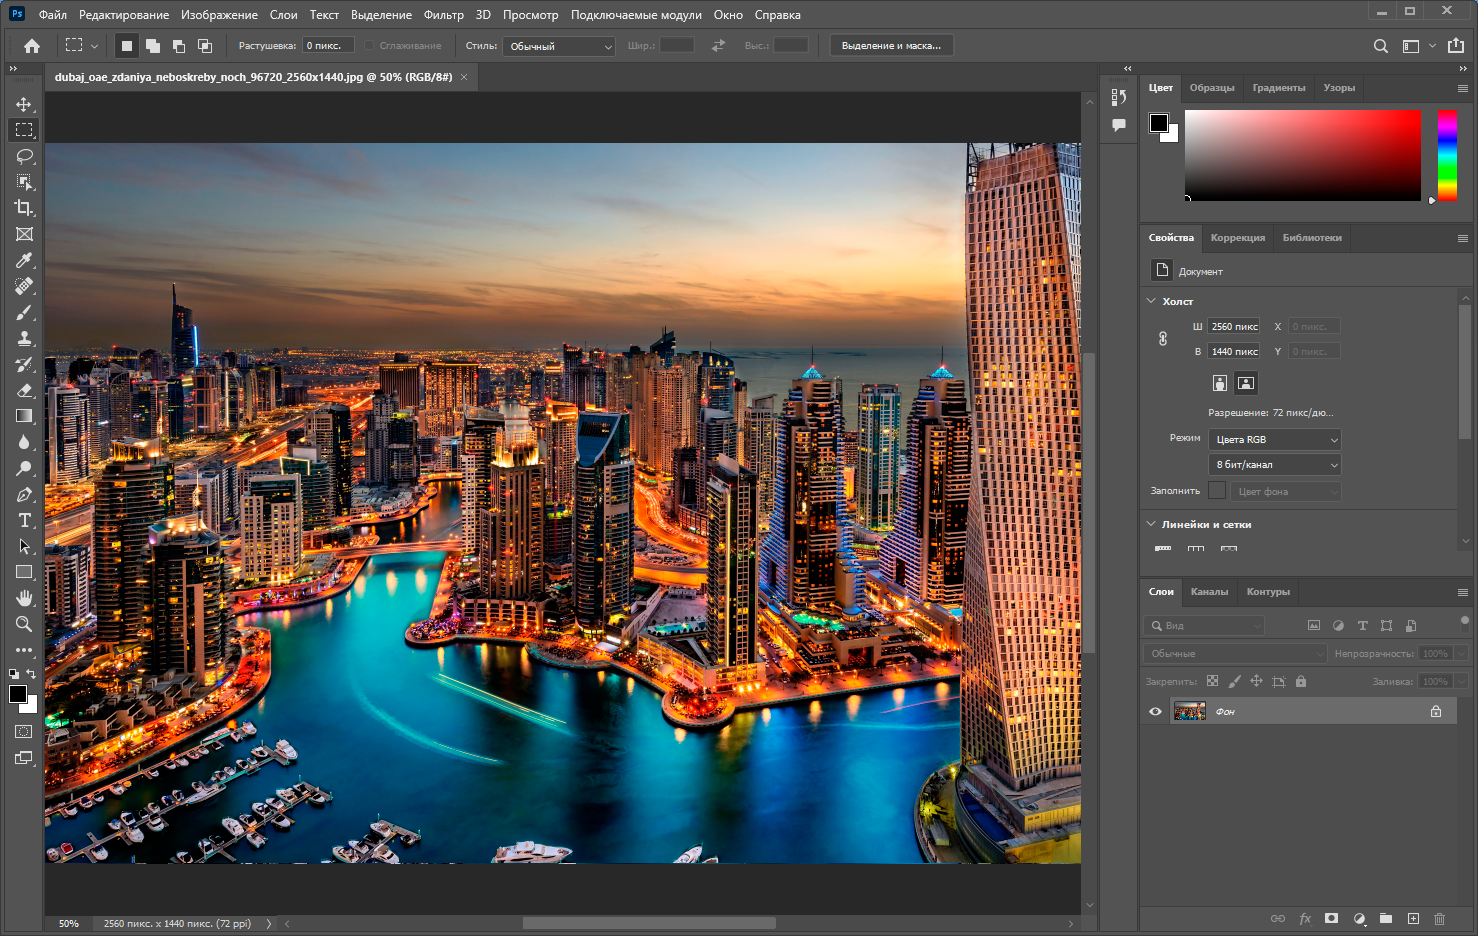 Adobe Photoshop 2022 23.1.1.202 RePack by KpoJIuK [Multi/Ru]